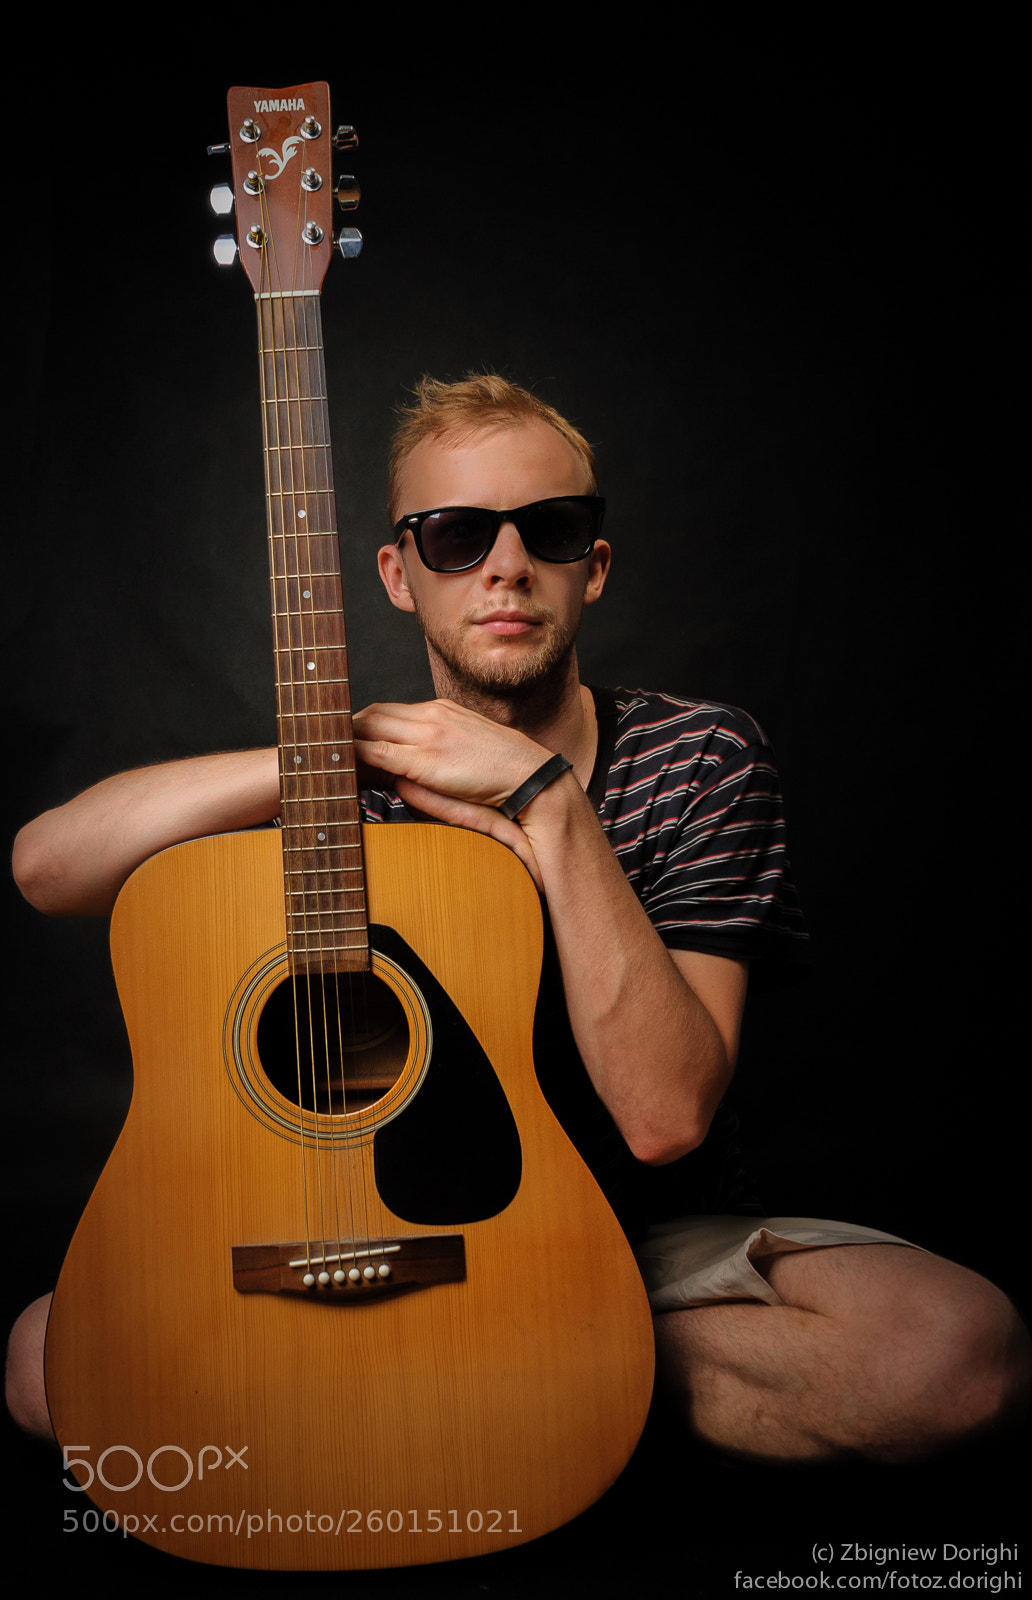 Nikon D700 sample photo. Guitar player photography